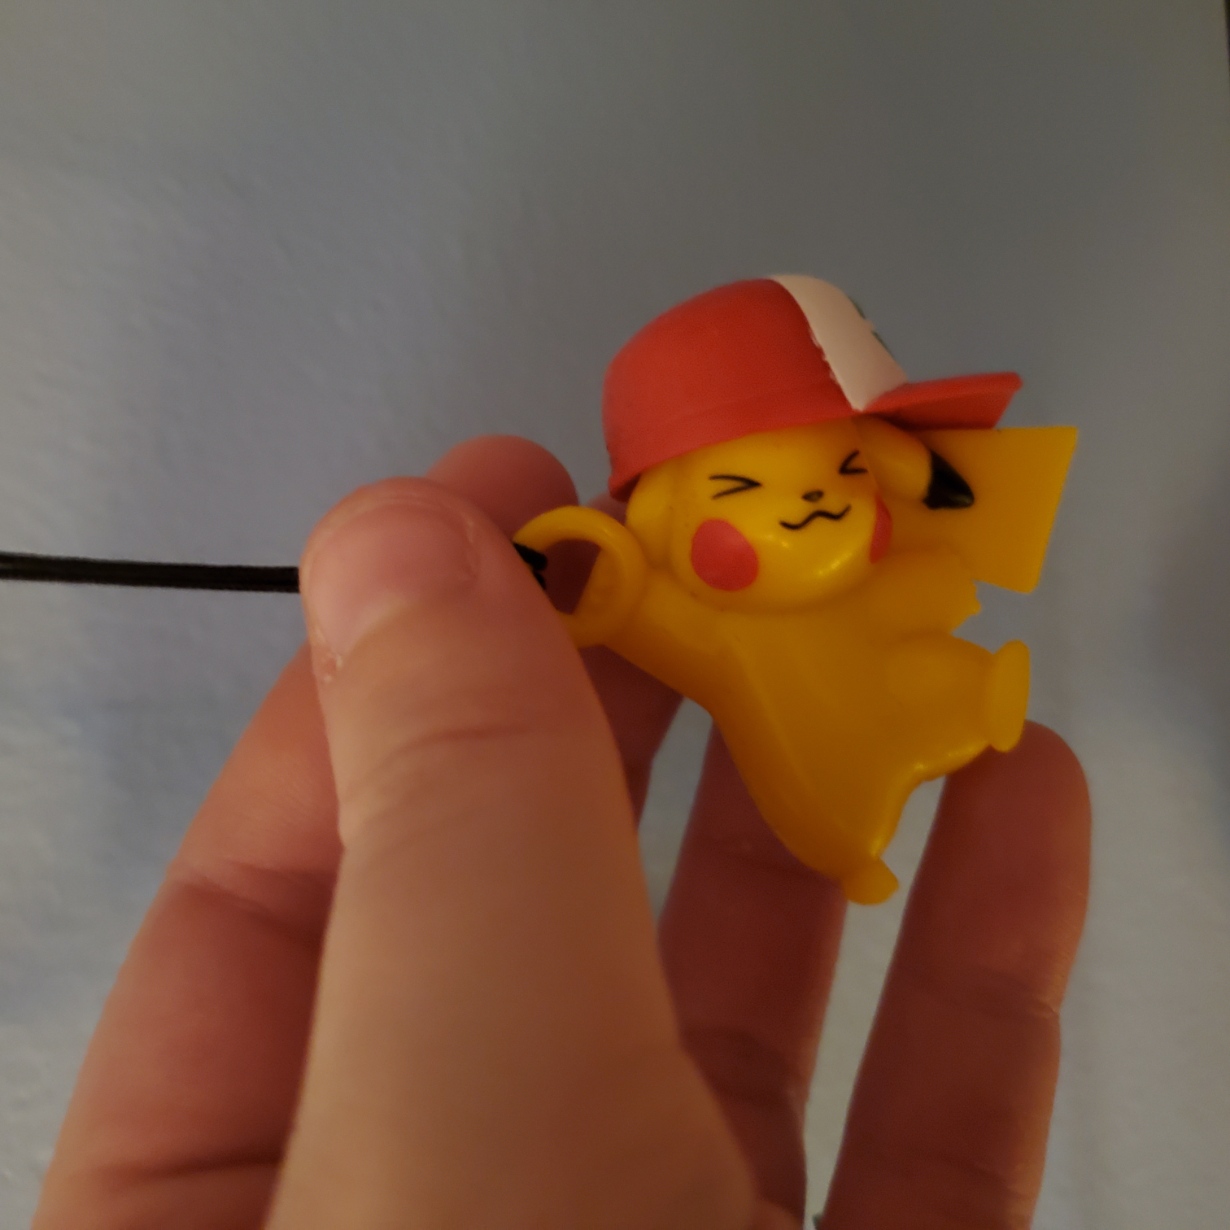 pikachu in a hat